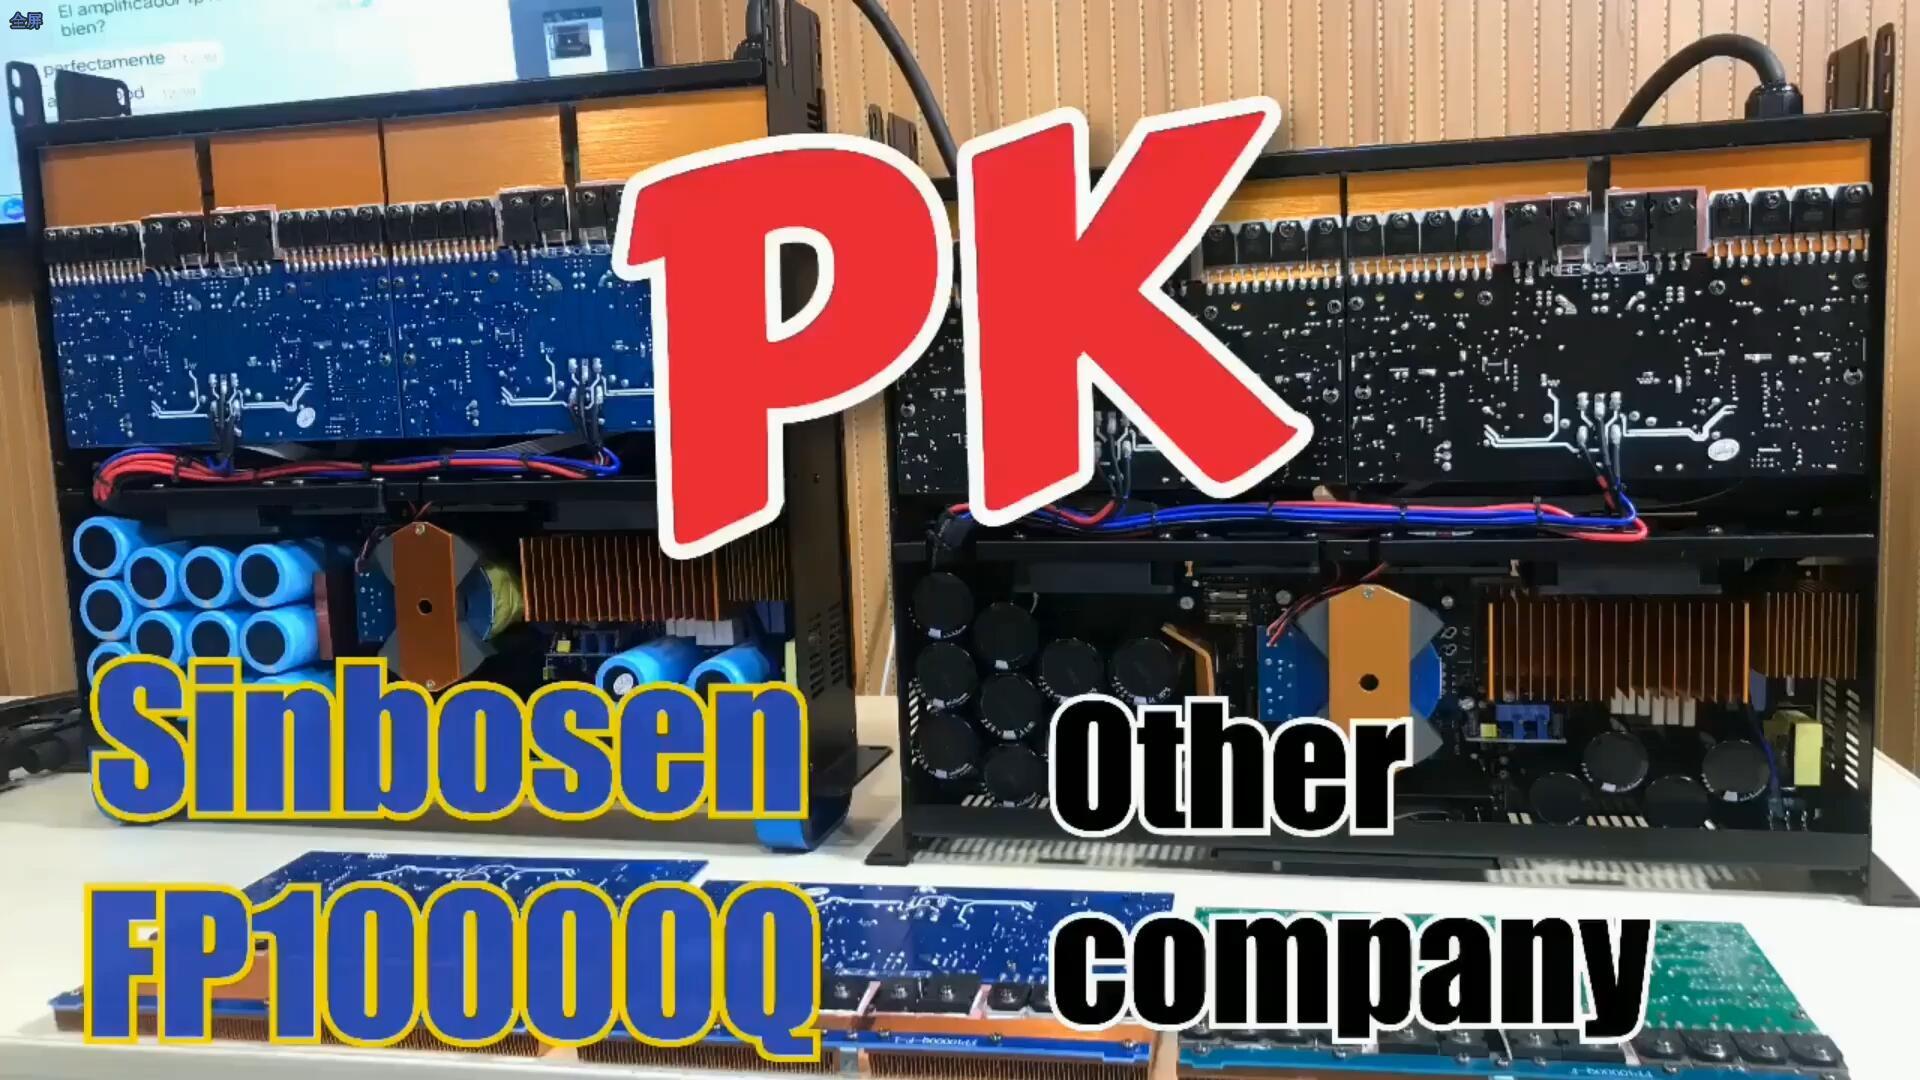 Sinbosen FP10000Q PK otra empresa